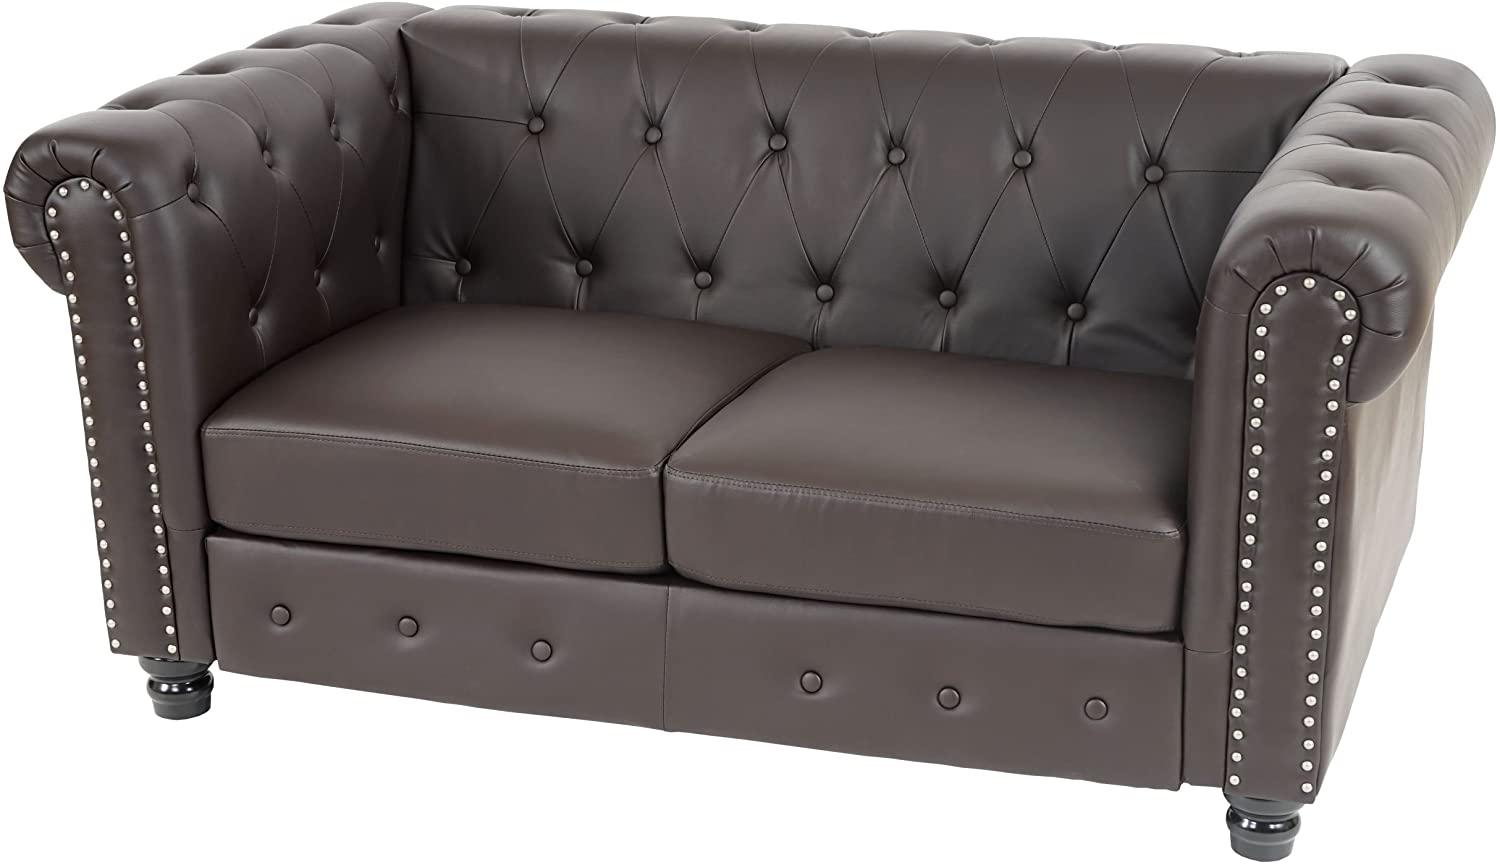 Luxus 2er Sofa Loungesofa Couch Chesterfield Kunstleder 160cm ~ runde Füße, braun Bild 1